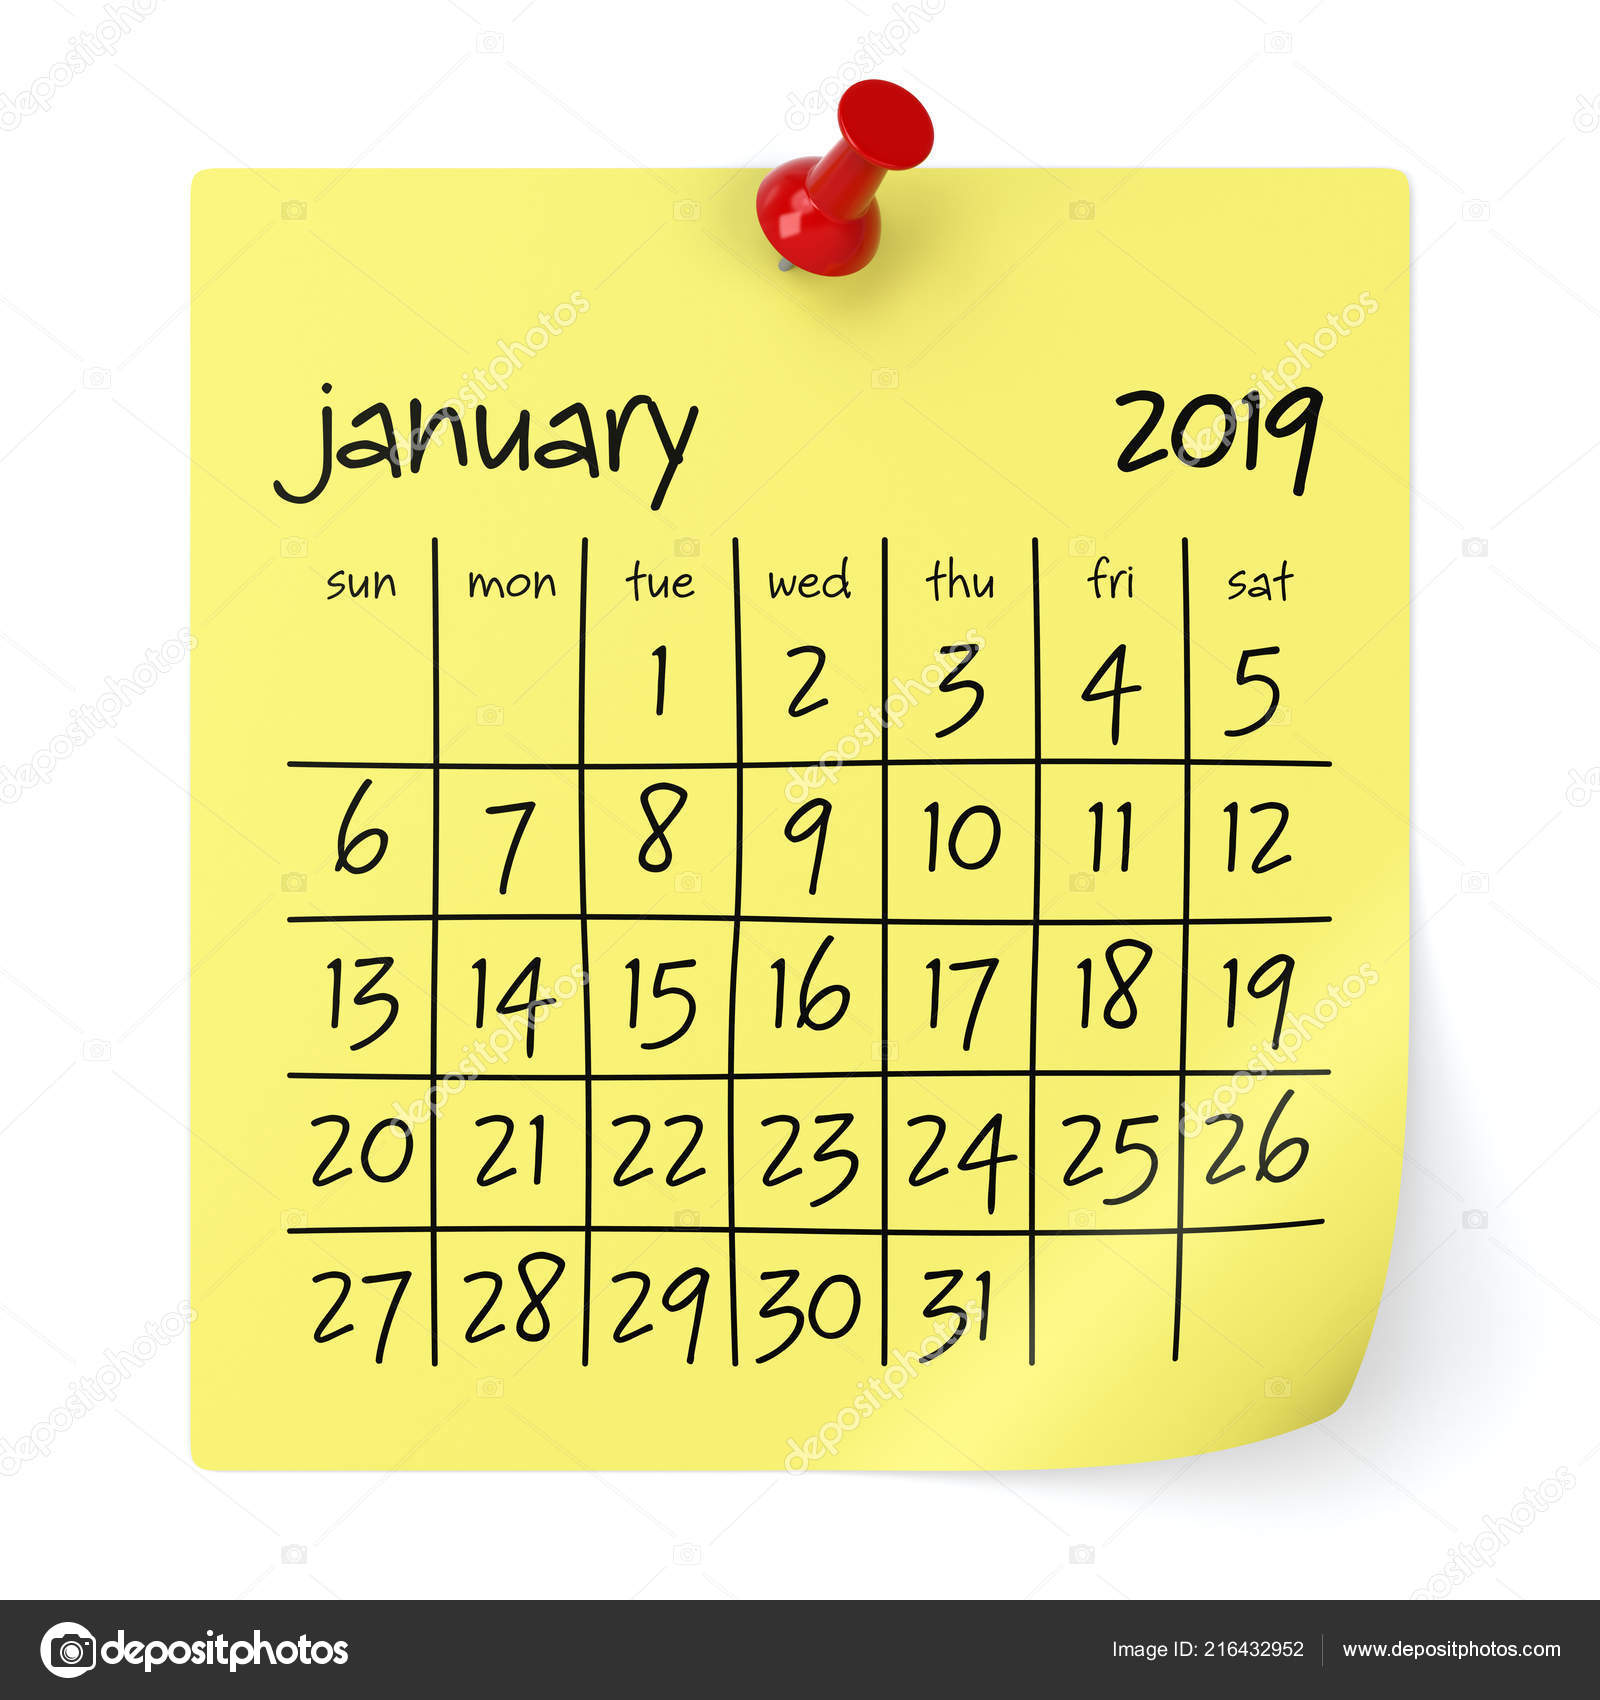 january-2019-calendar-isolated-white-background-illustration-stock